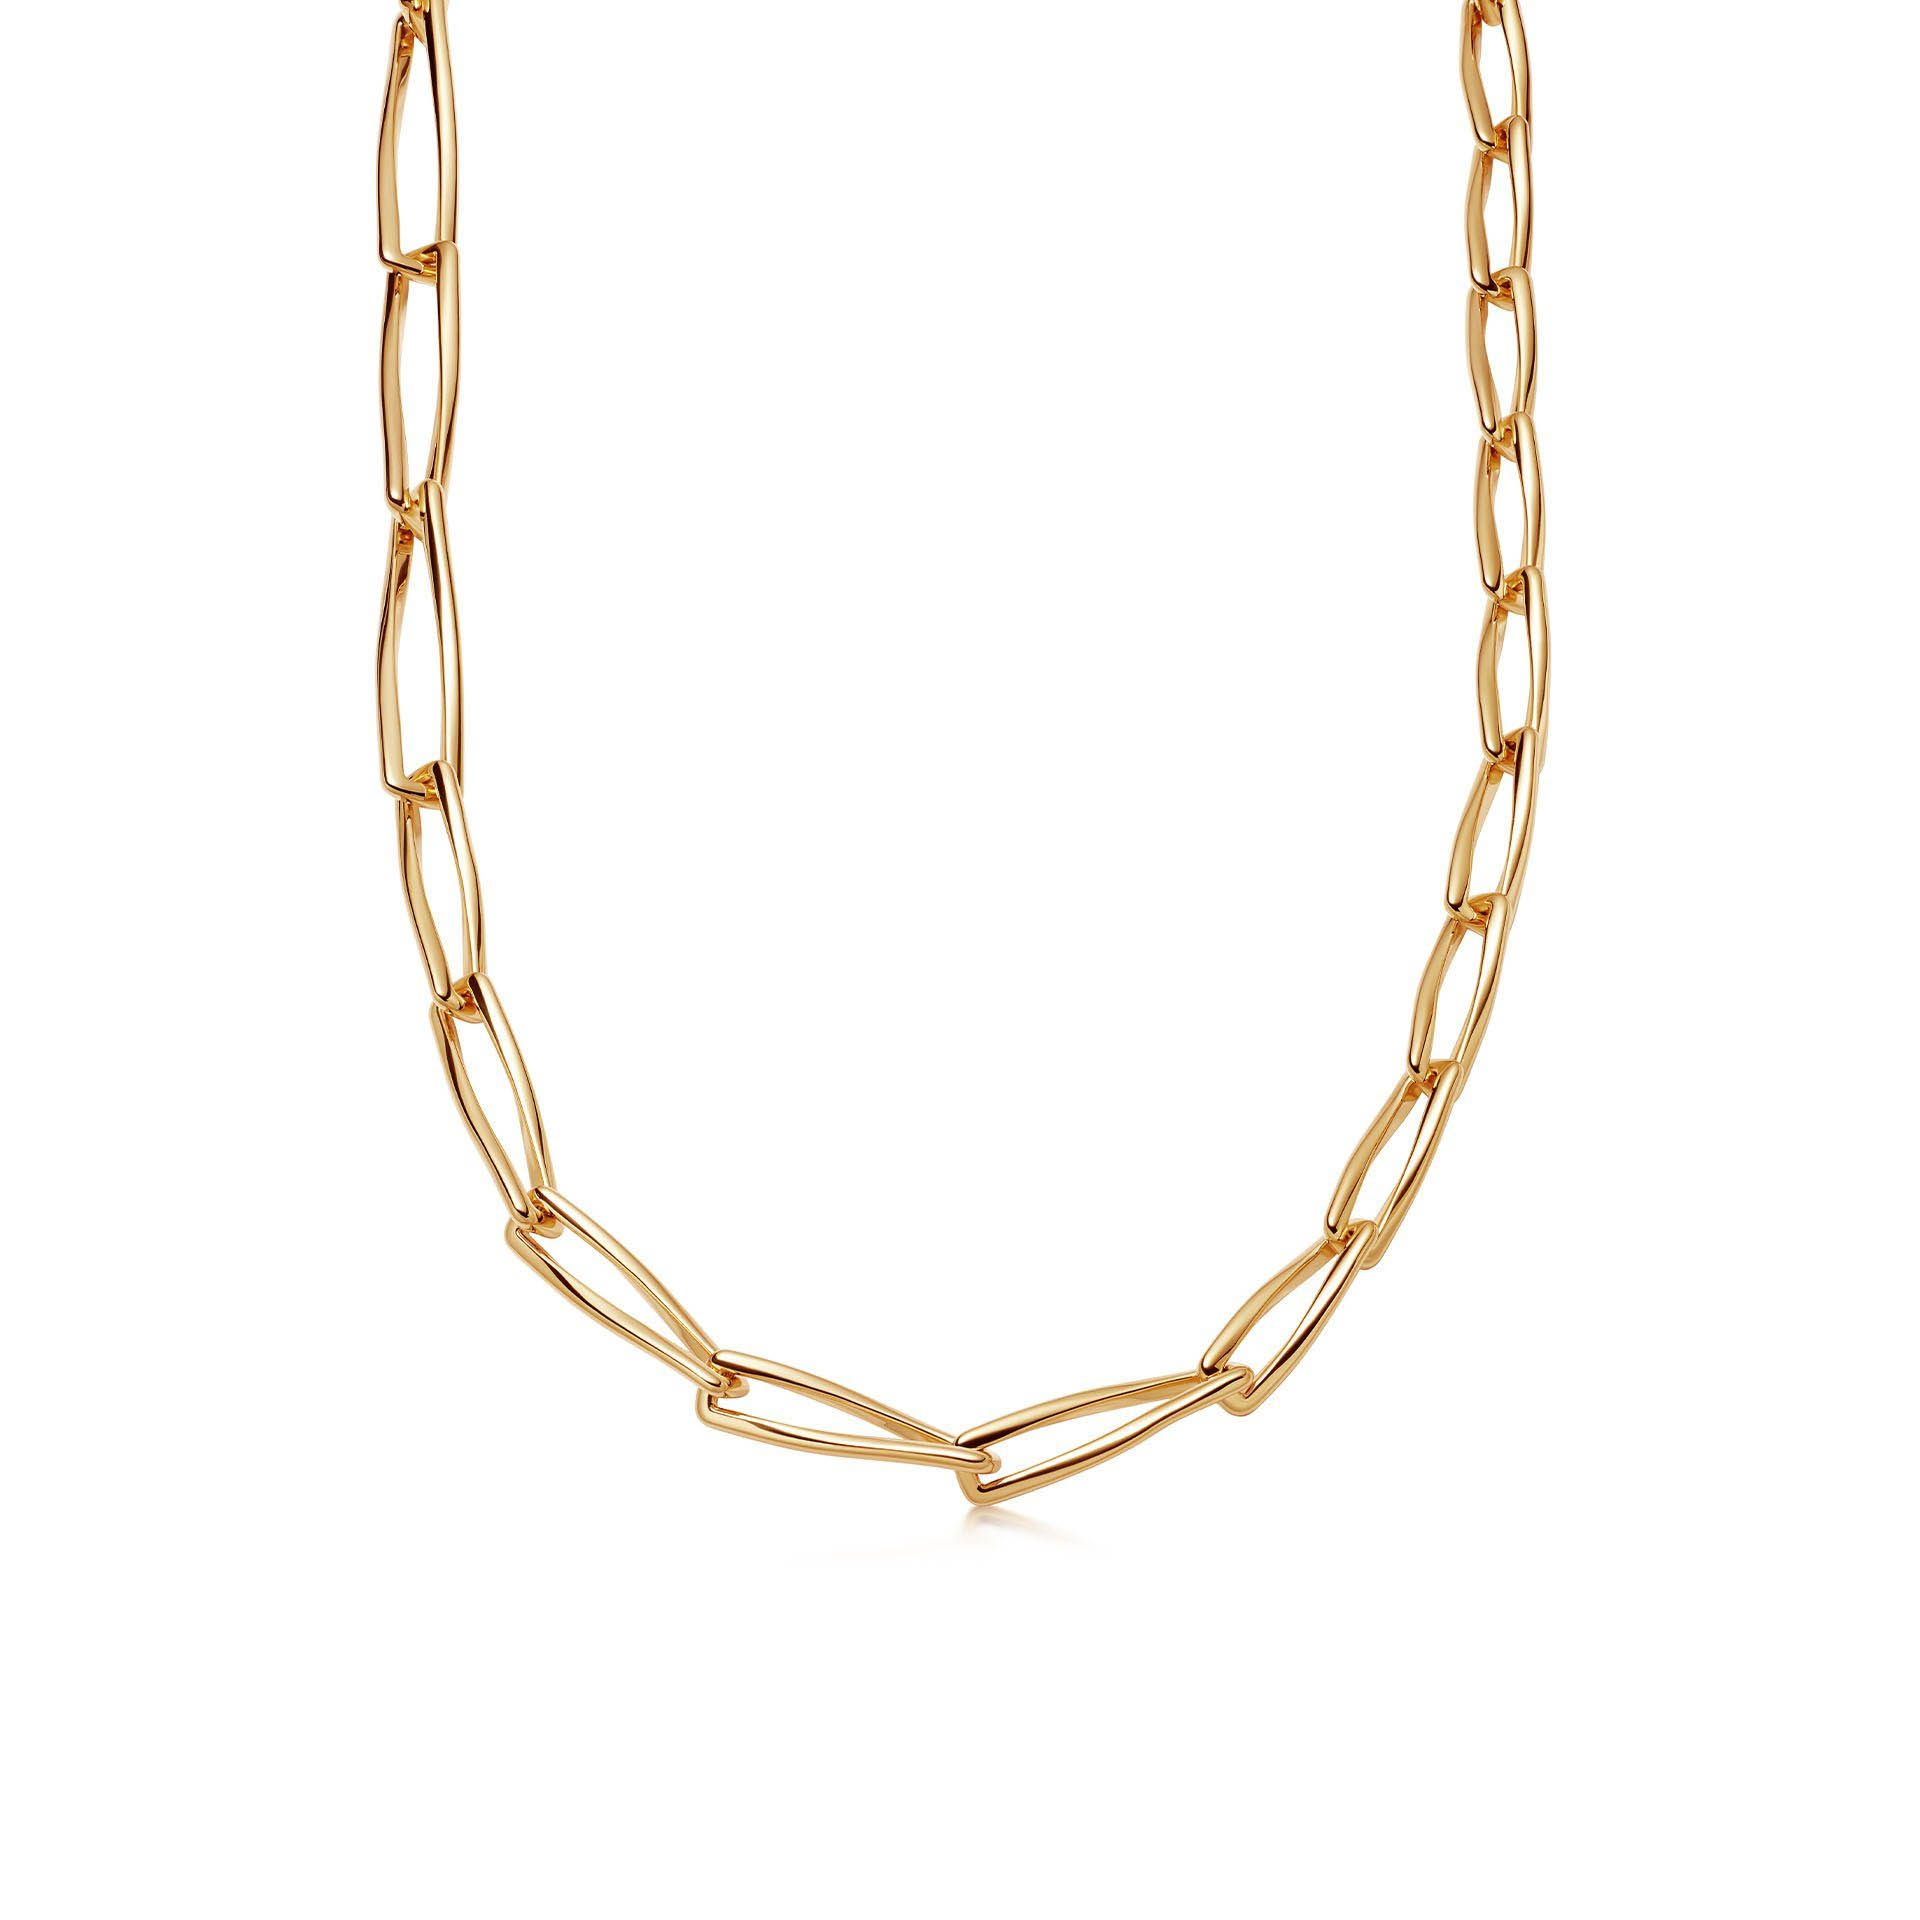 Grossistdesigna dina smycken OEM/ODM smycken halsband i 18 karat guldpläterade på mässing OEM service